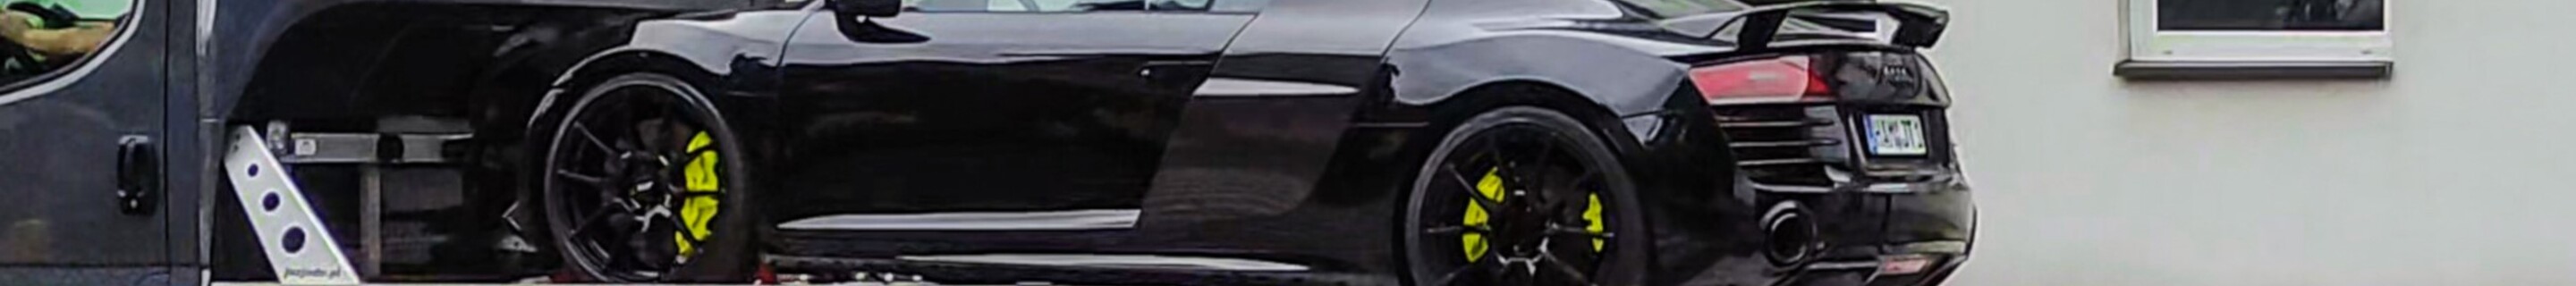 Audi R8 V10 Plus 2013